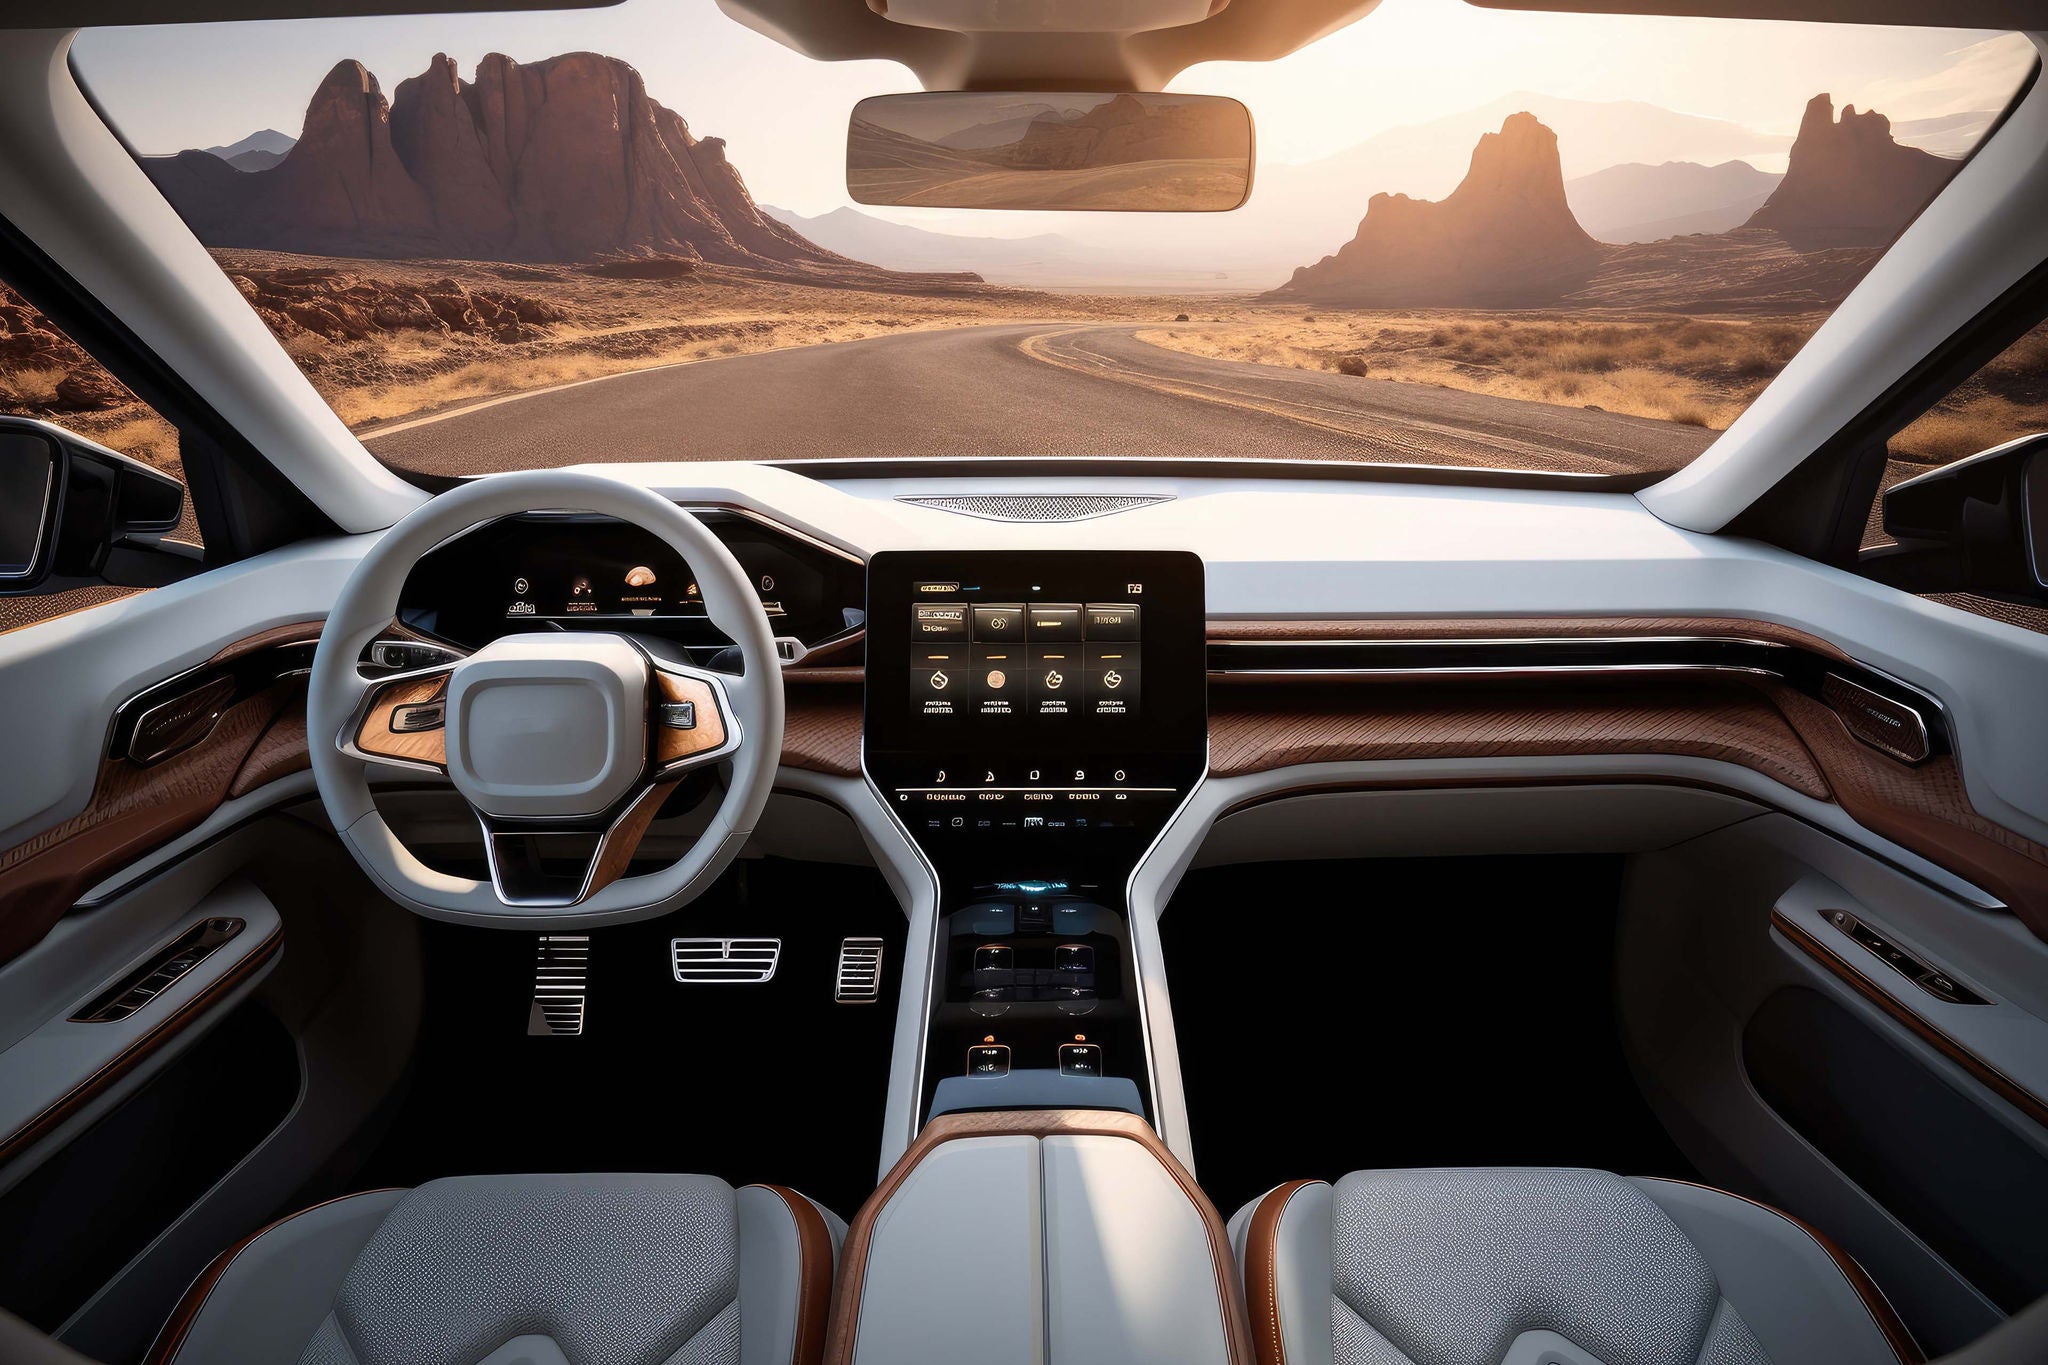 Car interior design, A futuristic car in a off road landscape.